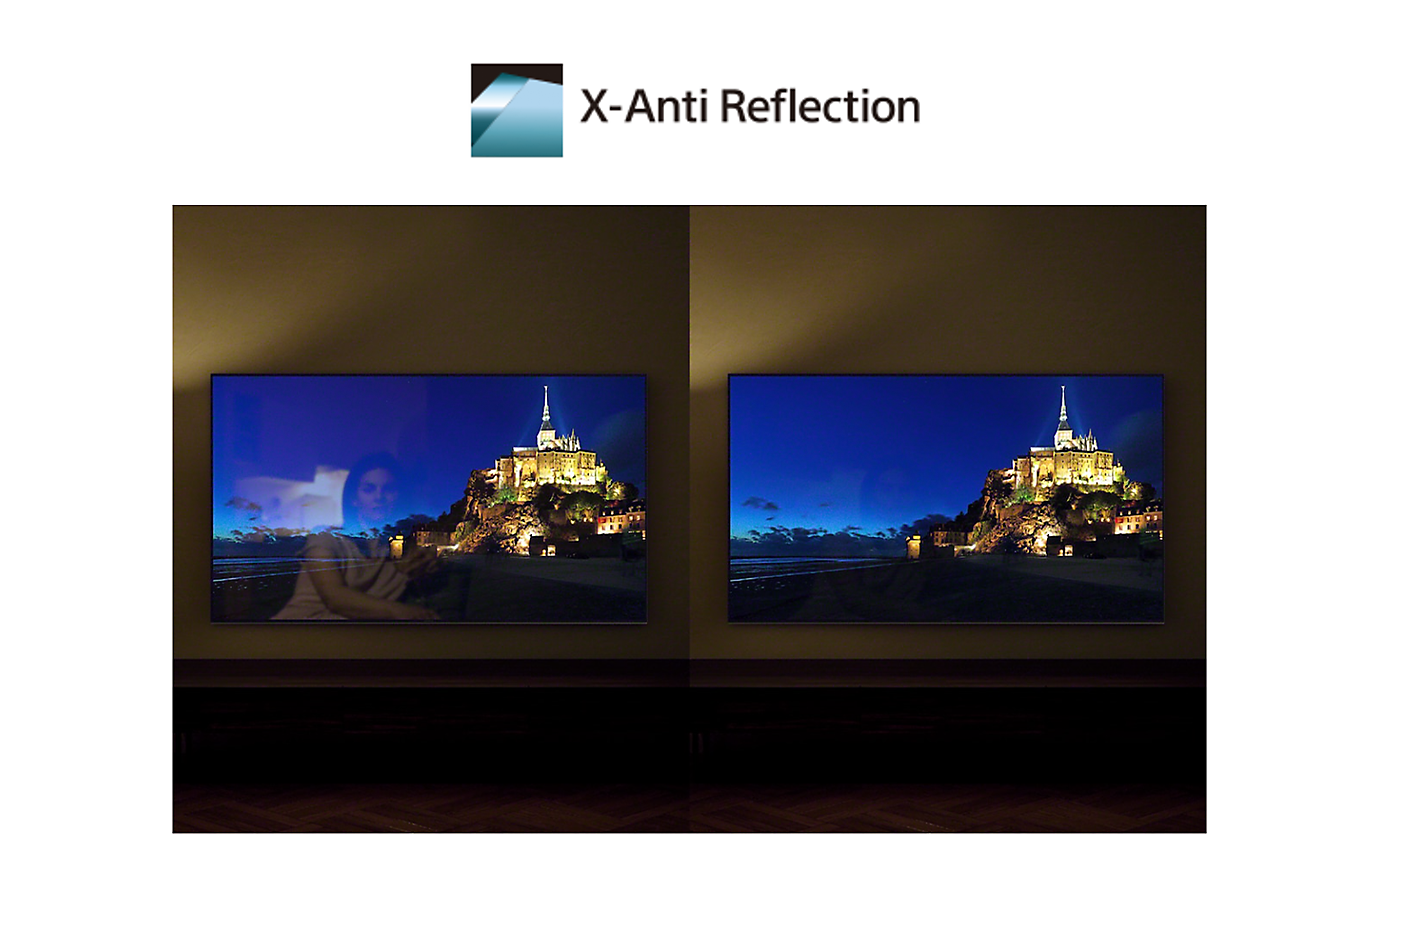 Porovnání obrazovek s technologií X-Anti Reflection a bez ní